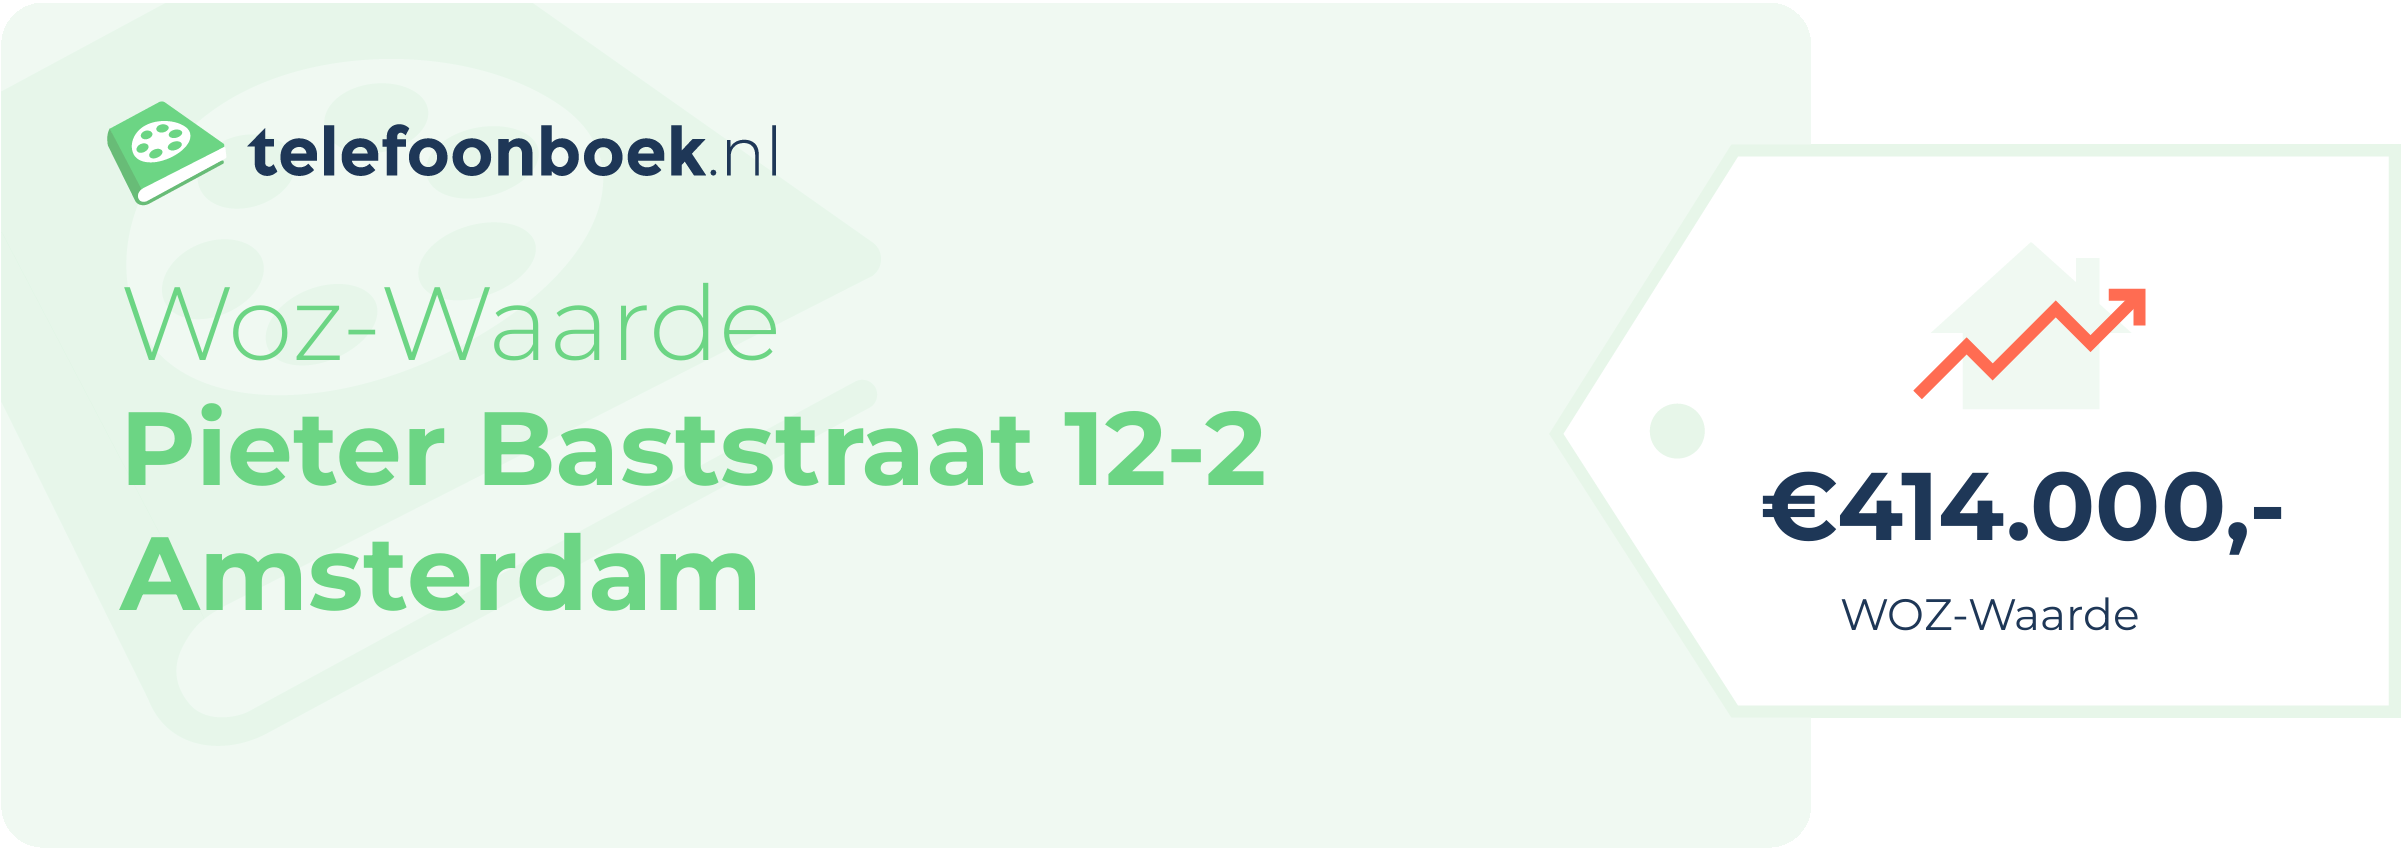 WOZ-waarde Pieter Baststraat 12-2 Amsterdam